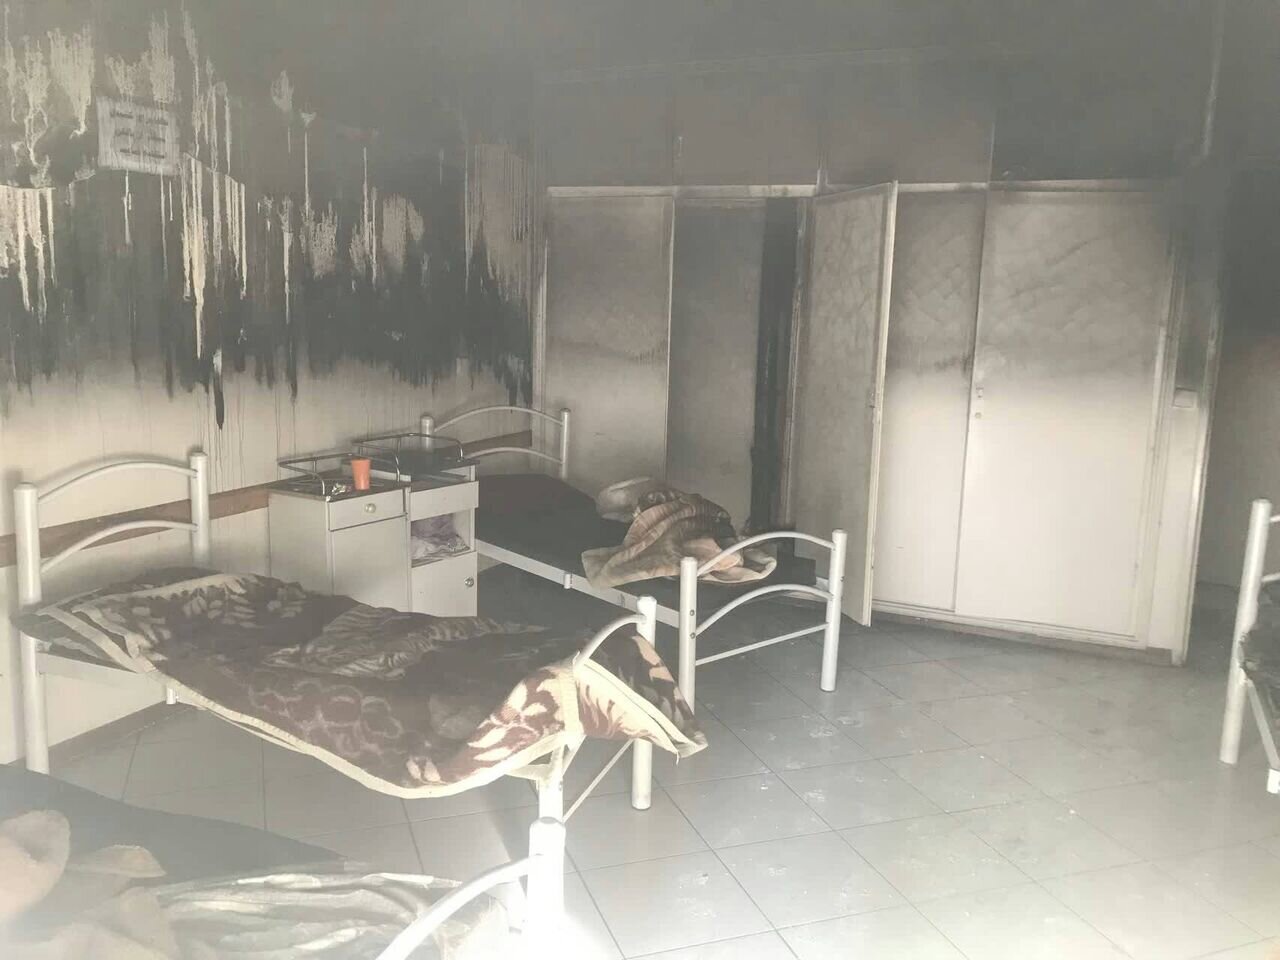 آتش سوزی یک مرکز درمانی در تهران